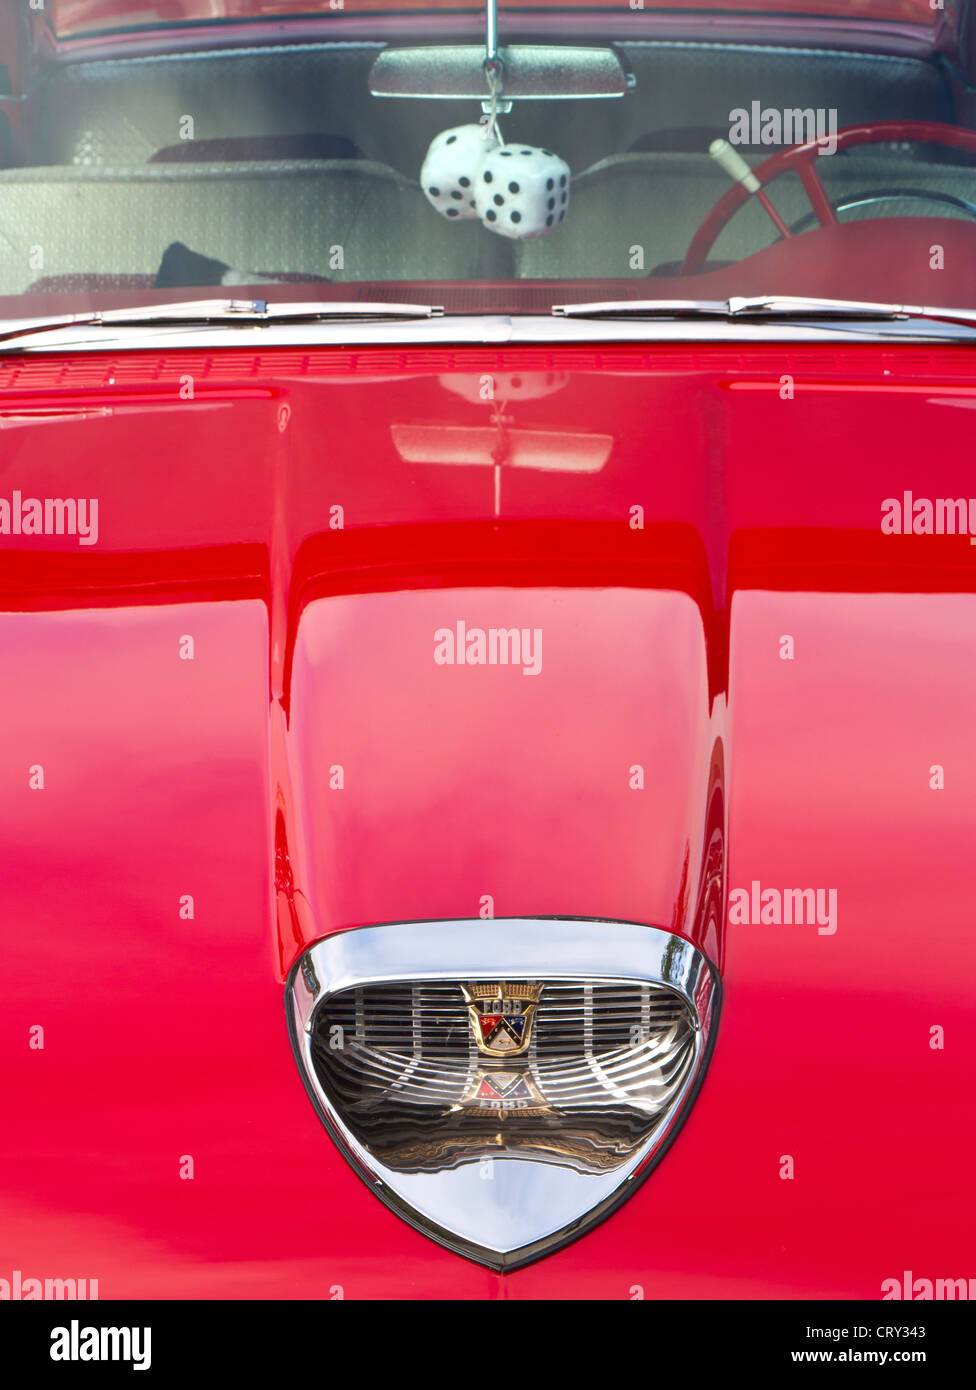 50er Jahre Oldtimer Detail auf rot glänzenden Ford Fairlane Skyliner  amerikanischen Oldtimer mit pelzigen Würfel hängen in Windschutzscheibe  Stockfotografie - Alamy